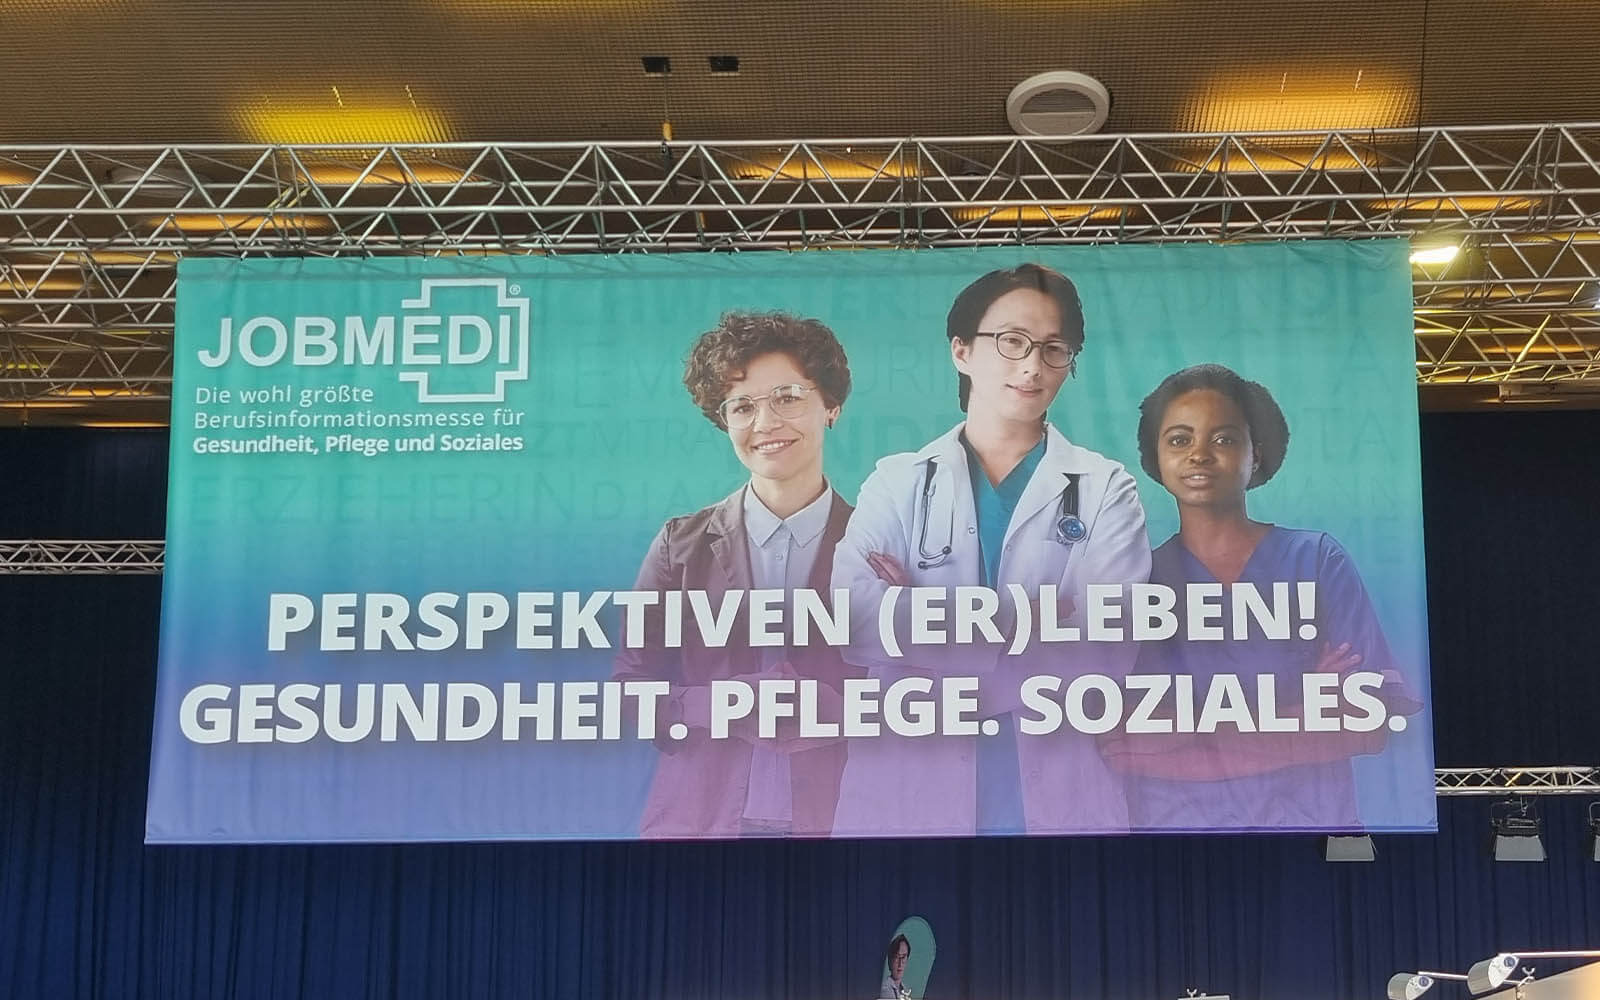 Karriere im Gesundheitssektor – Die Top-Arbeitgeber der Gesundheits-, Pflege- und Sozialbranche präsentieren sich an zwei Tagen auf der 13. JOBMEDI Berlin im Palais am Funkturm